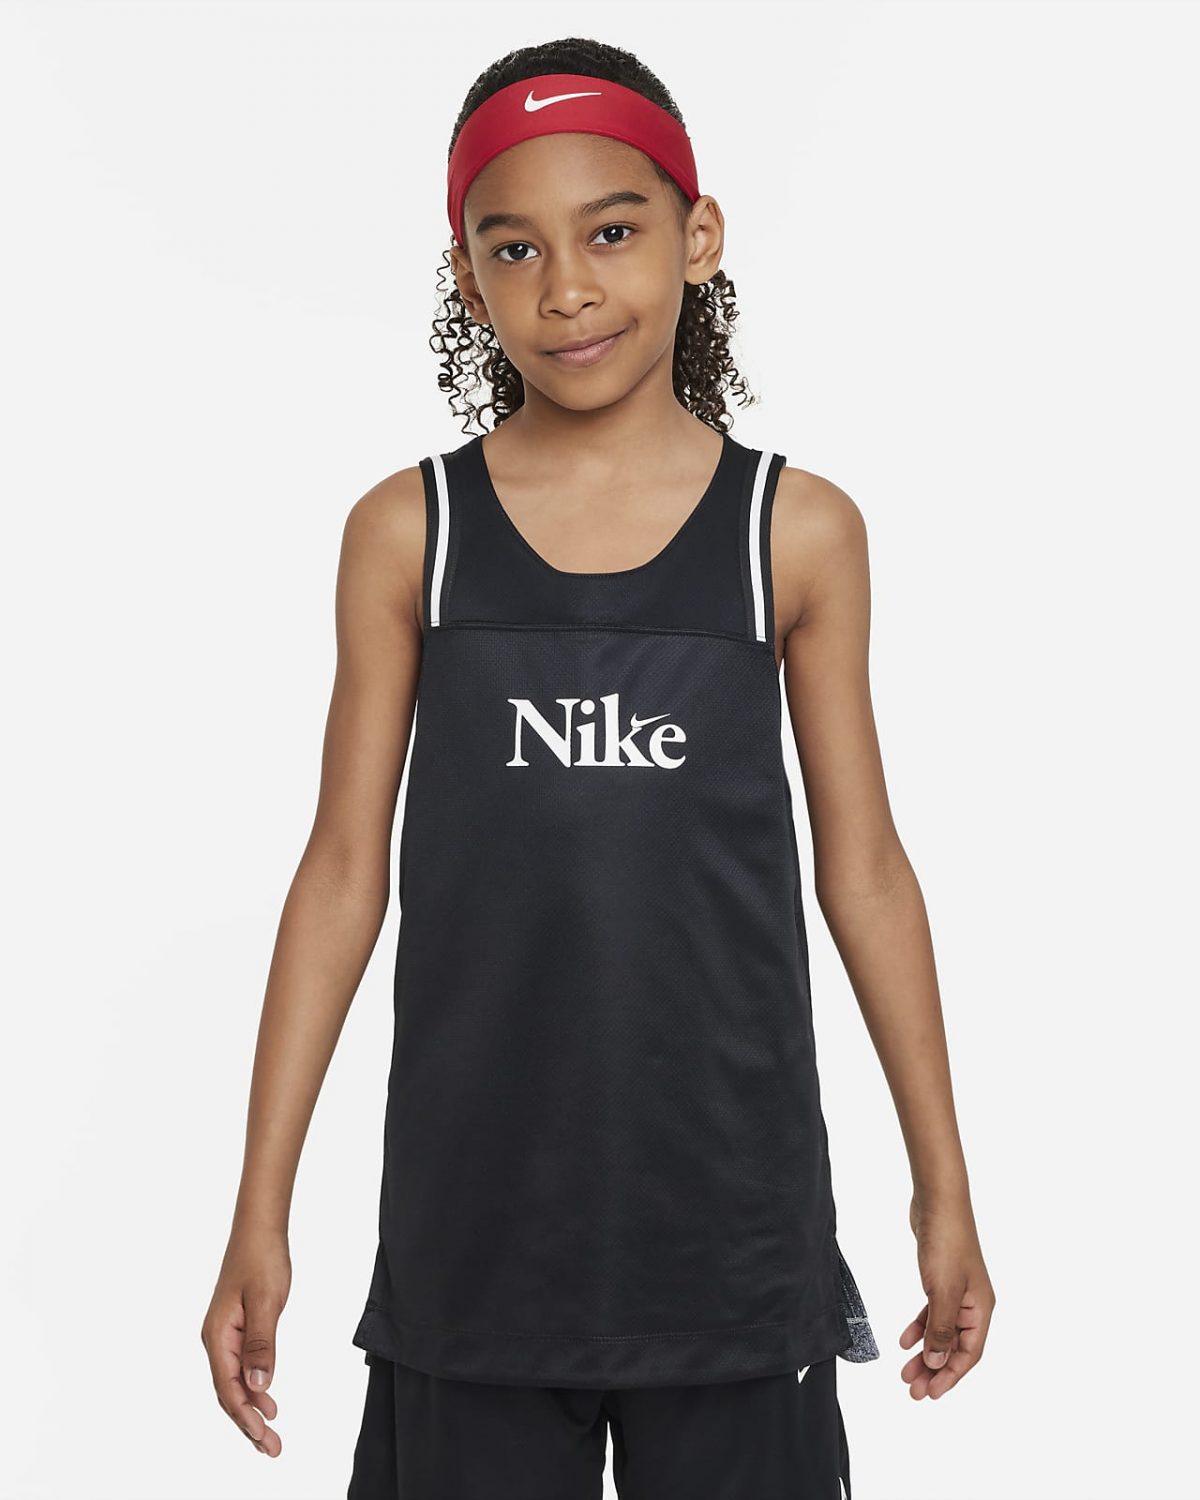 Детская майка Nike Culture of Basketball фото